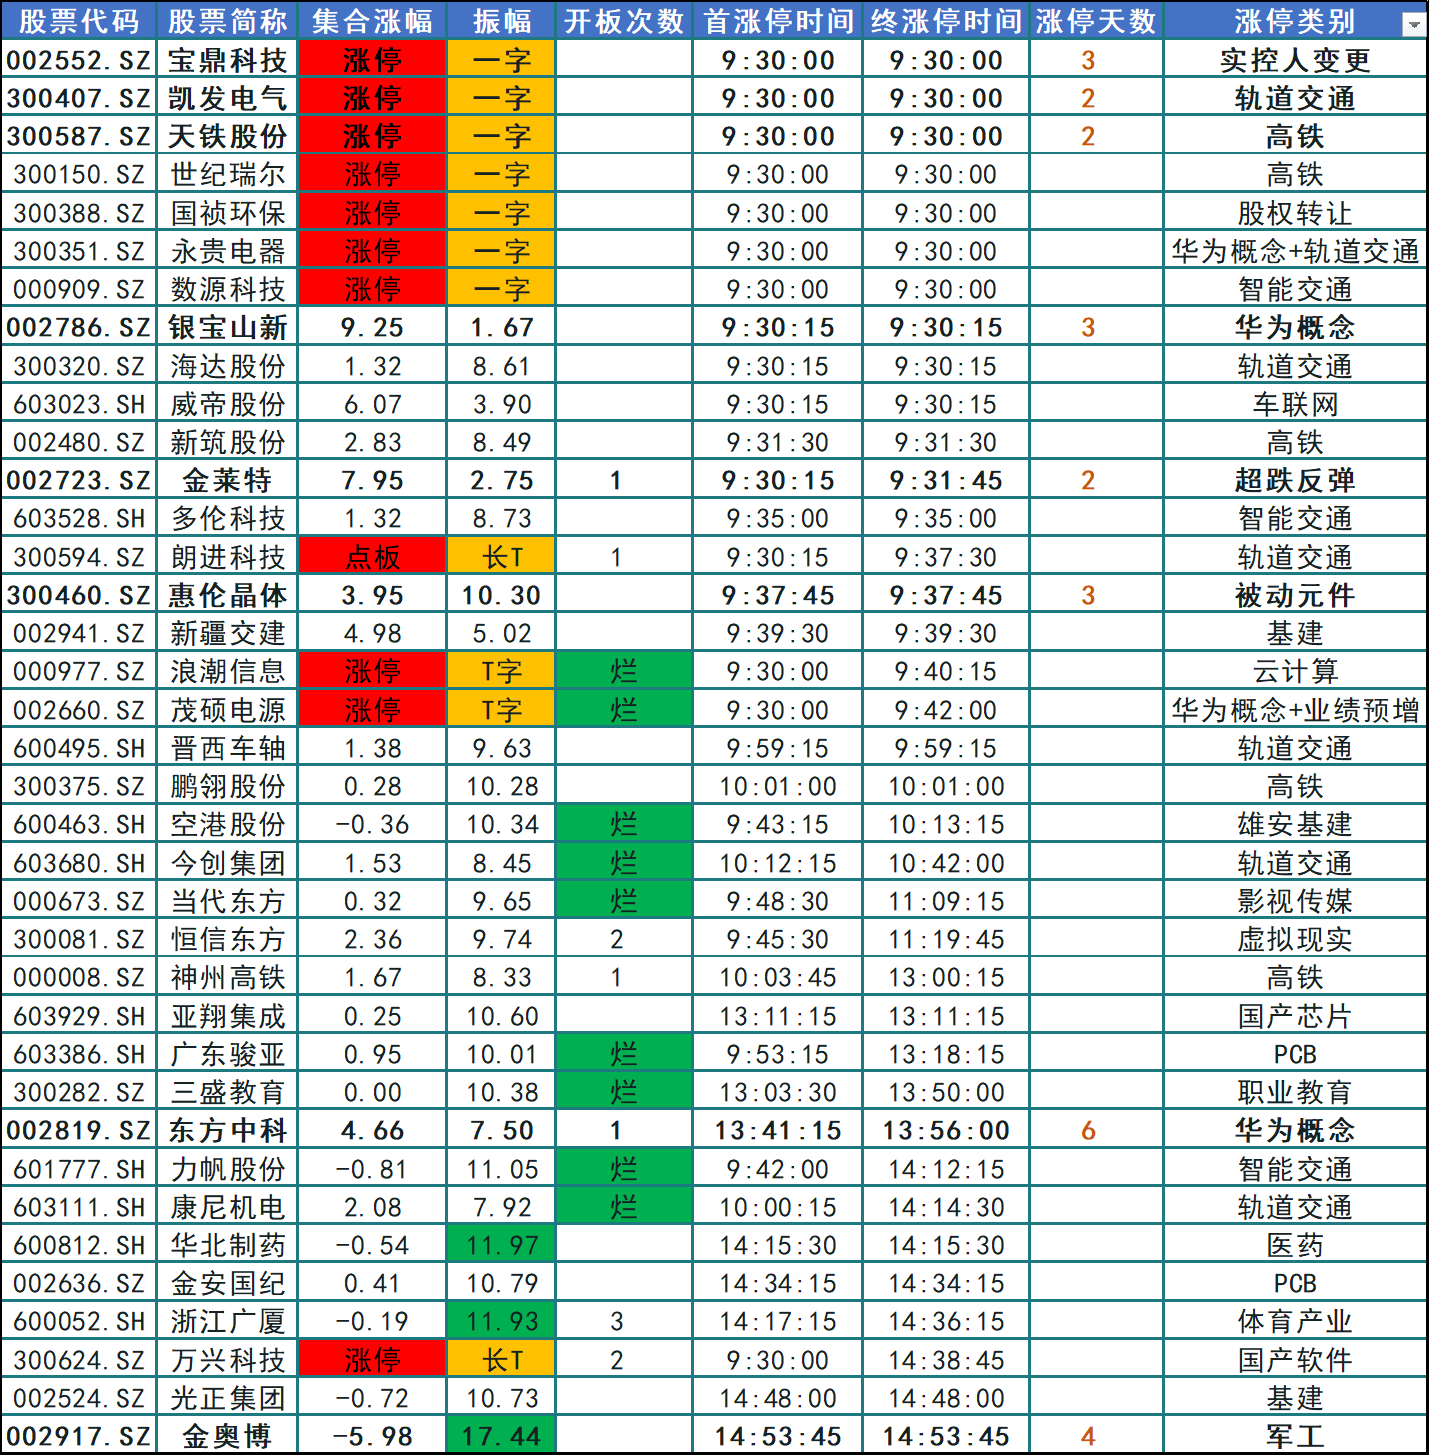 中国OB欧宝中铁该股前日弱势盘整形态短期成本为740元目前弱反弹